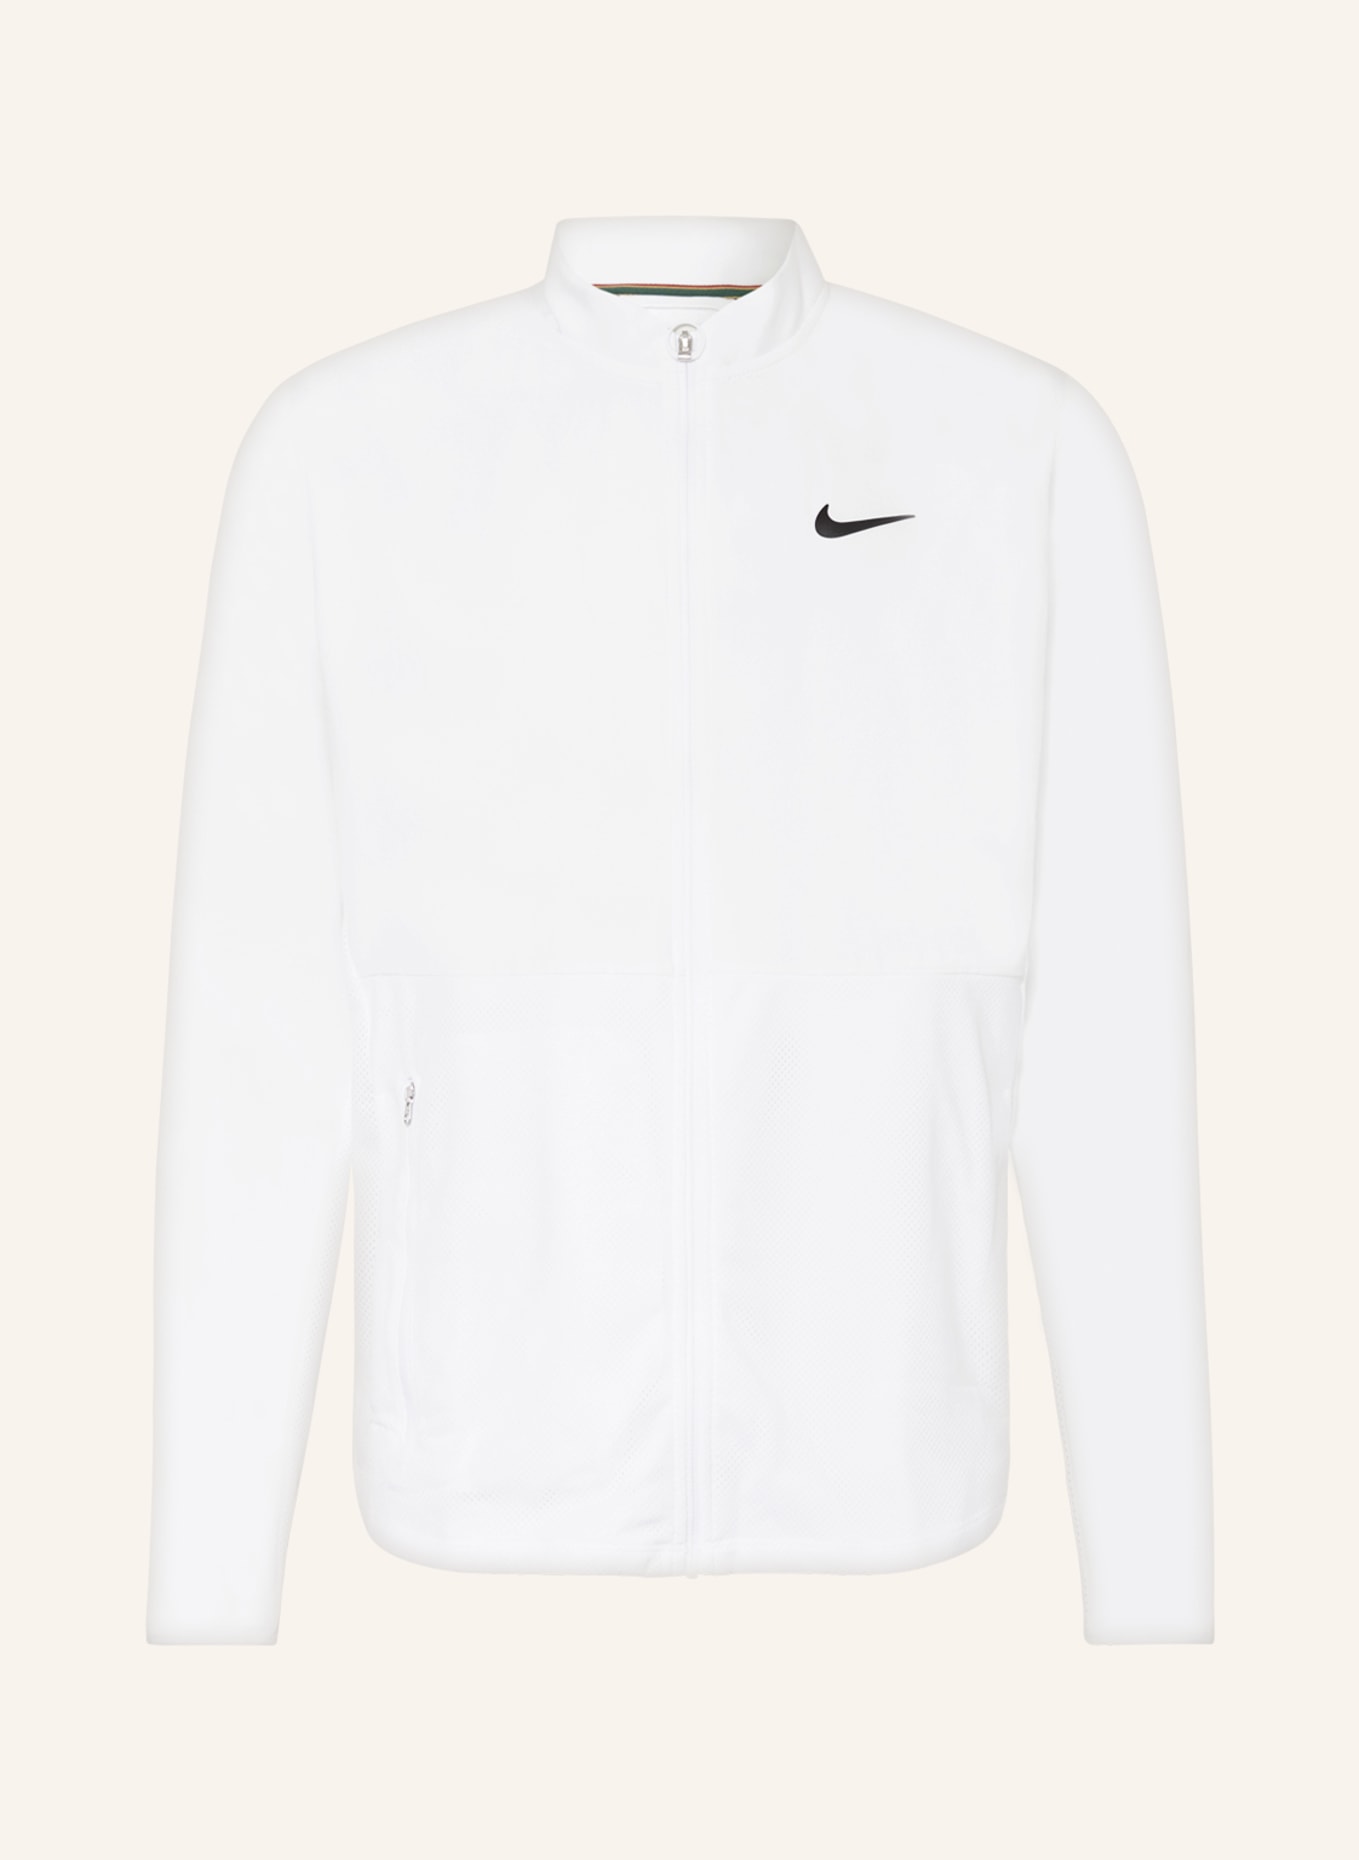 Nike Tennisjacke COURT ADVANTAGE mit Mesh, Farbe: WEISS (Bild 1)